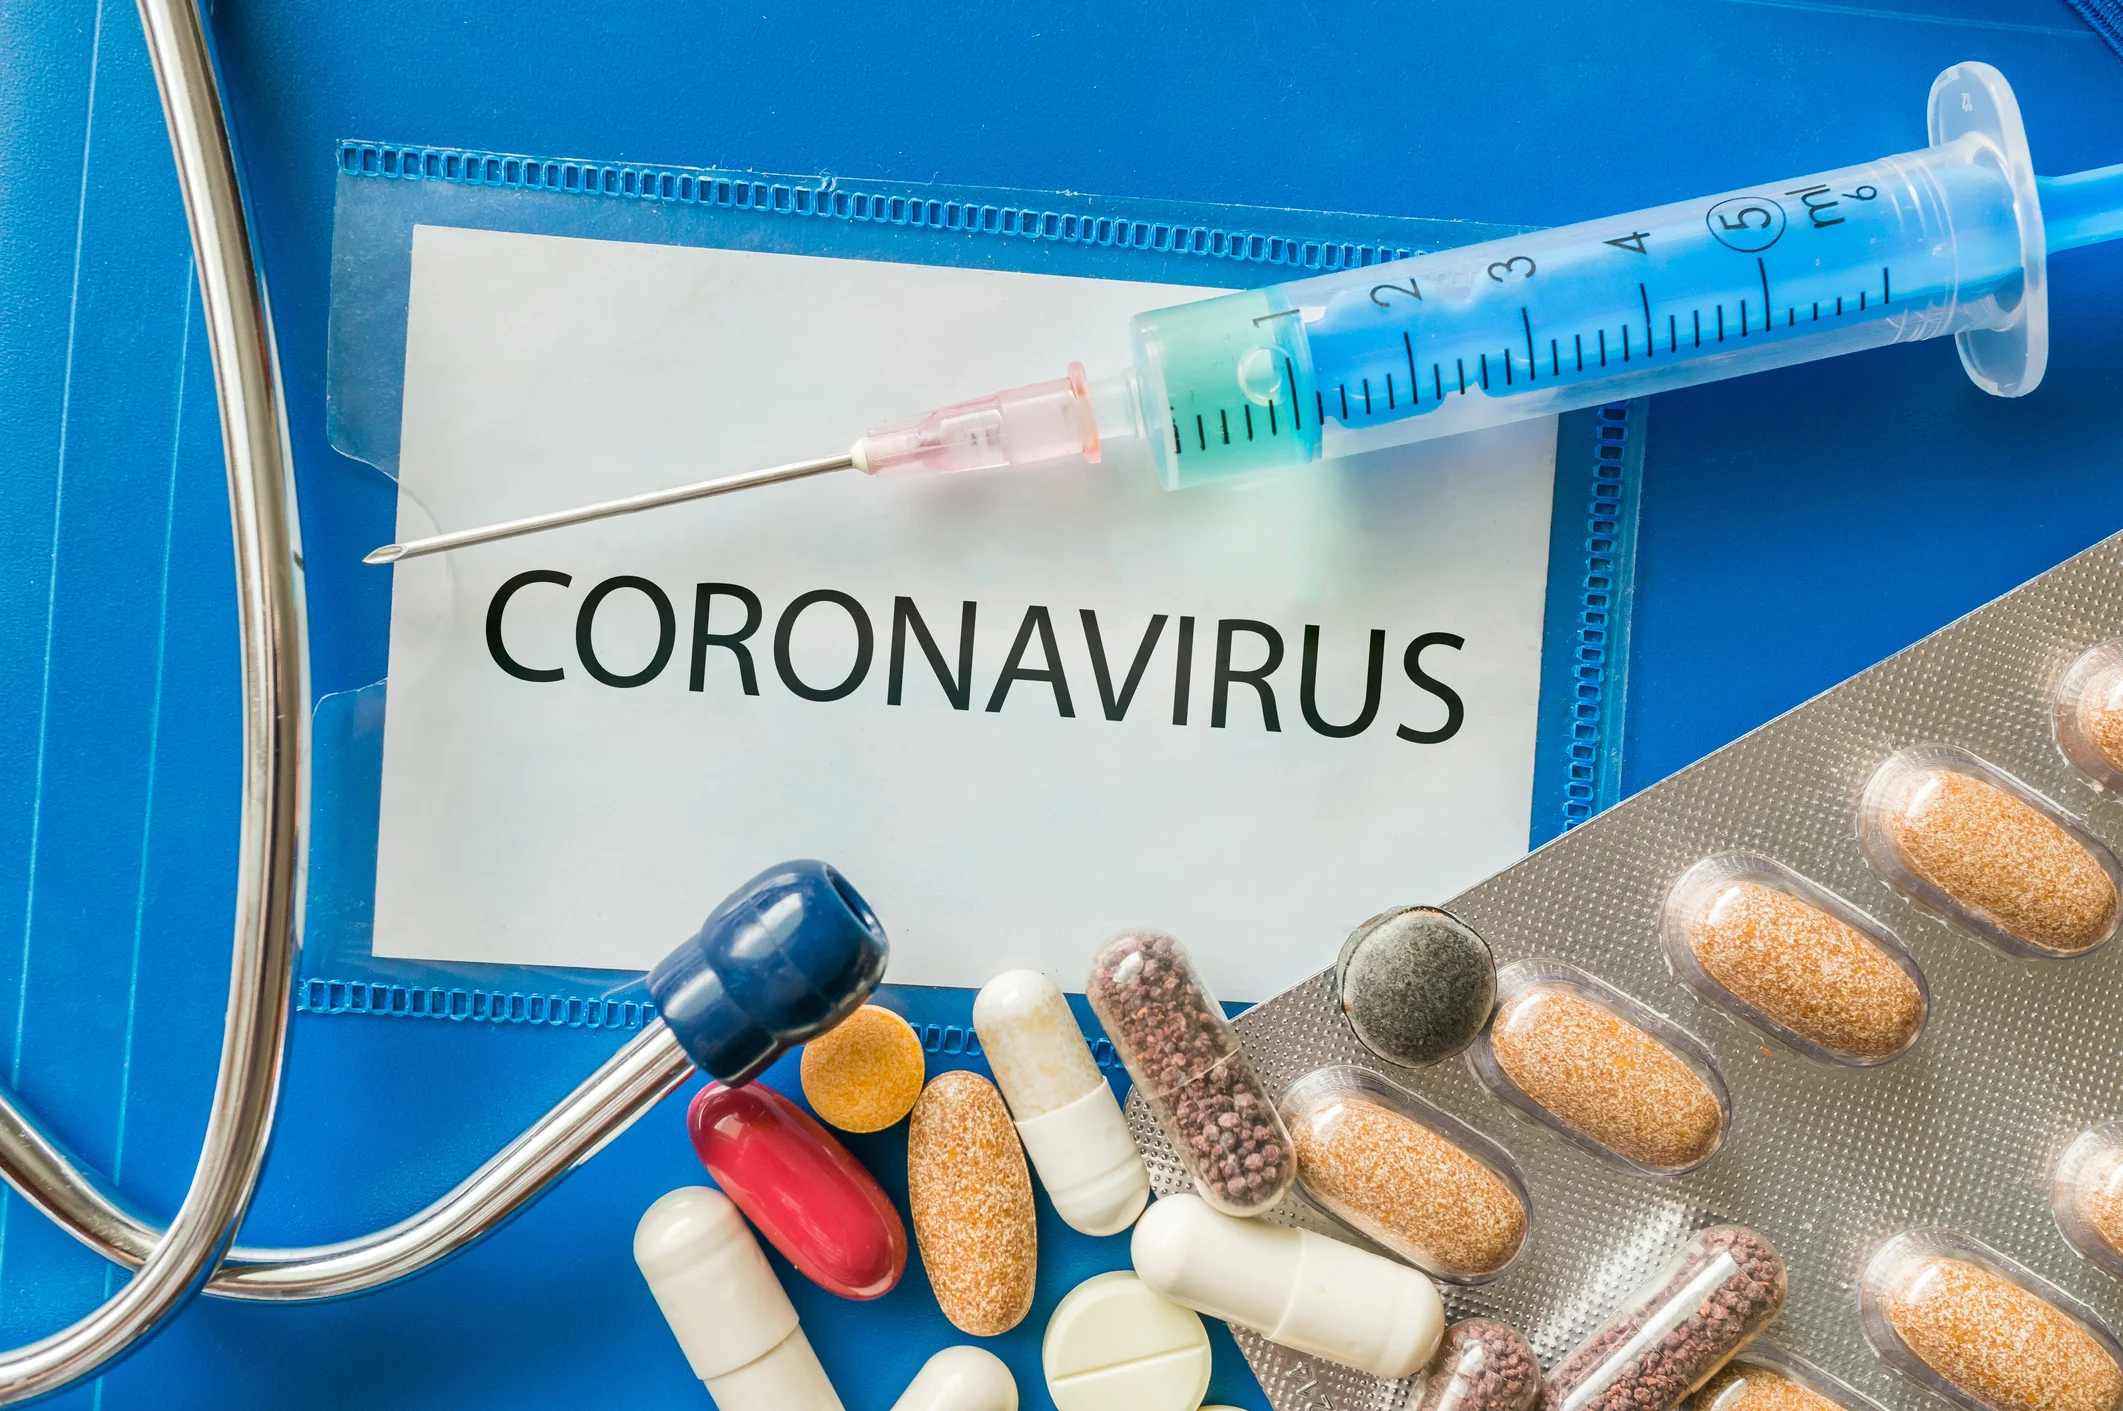 Ağrı kesici kullananlar dikkat! Prof. Dr. Şenyiğit'ten önemli koronavirüs uyarısı